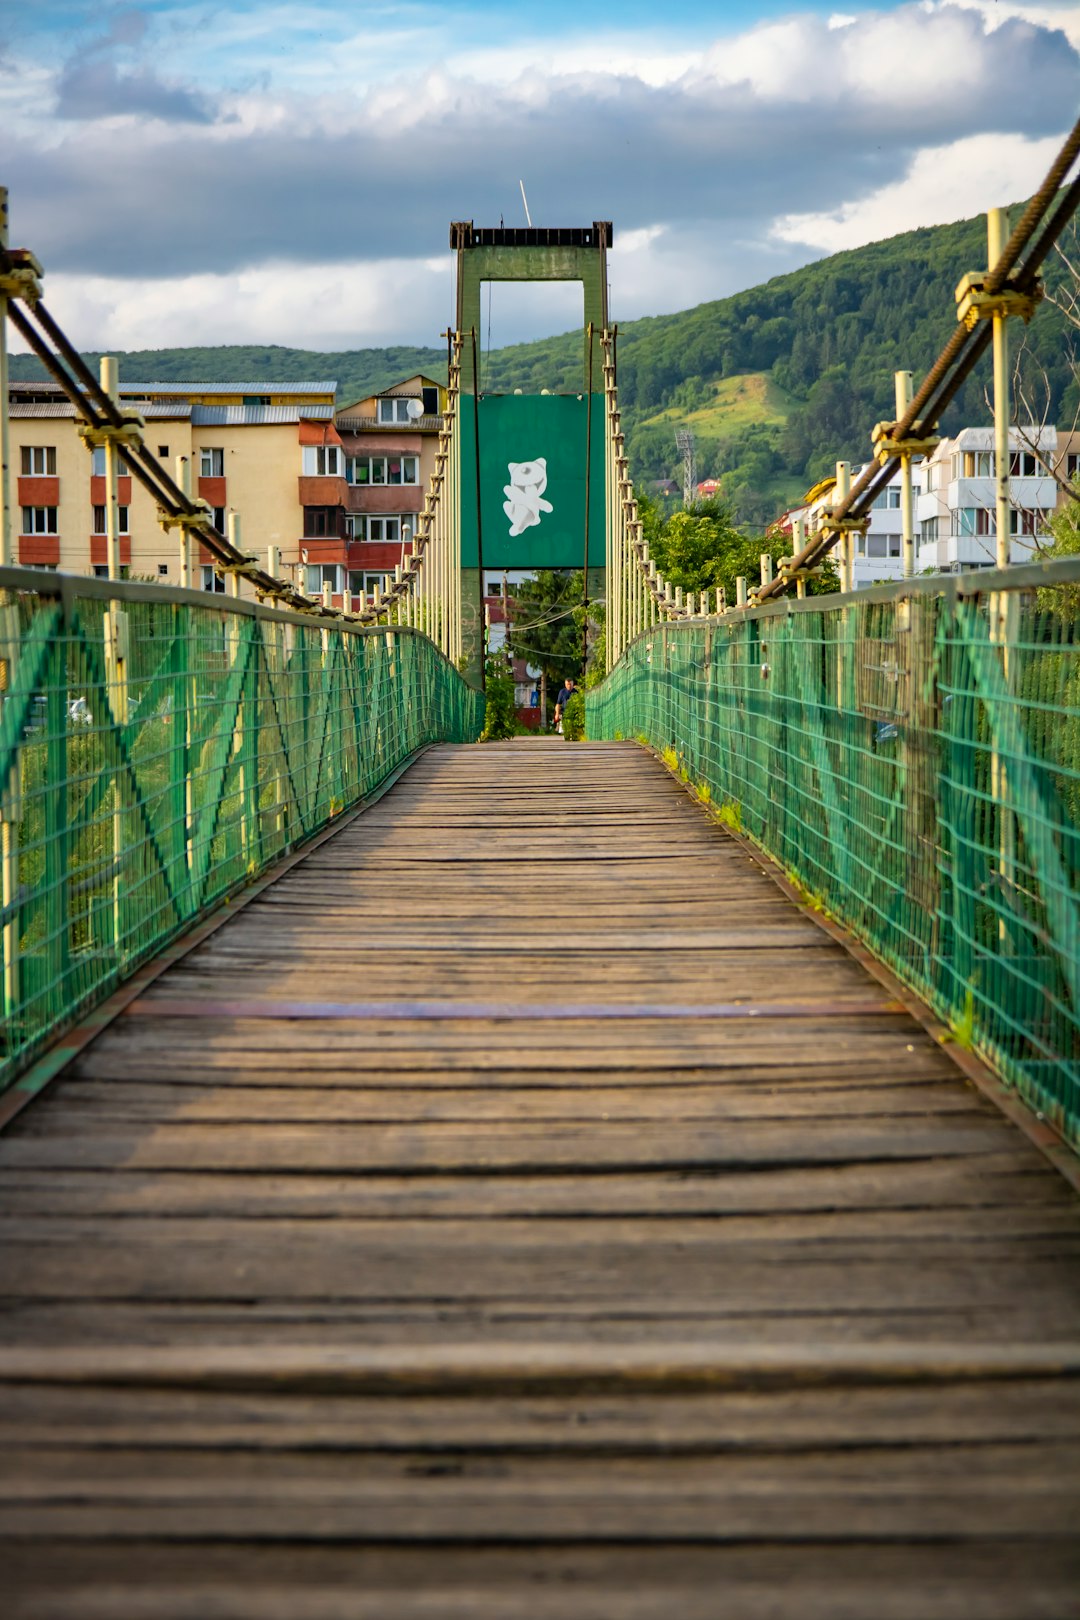 brown wooden bridge with green metal railings